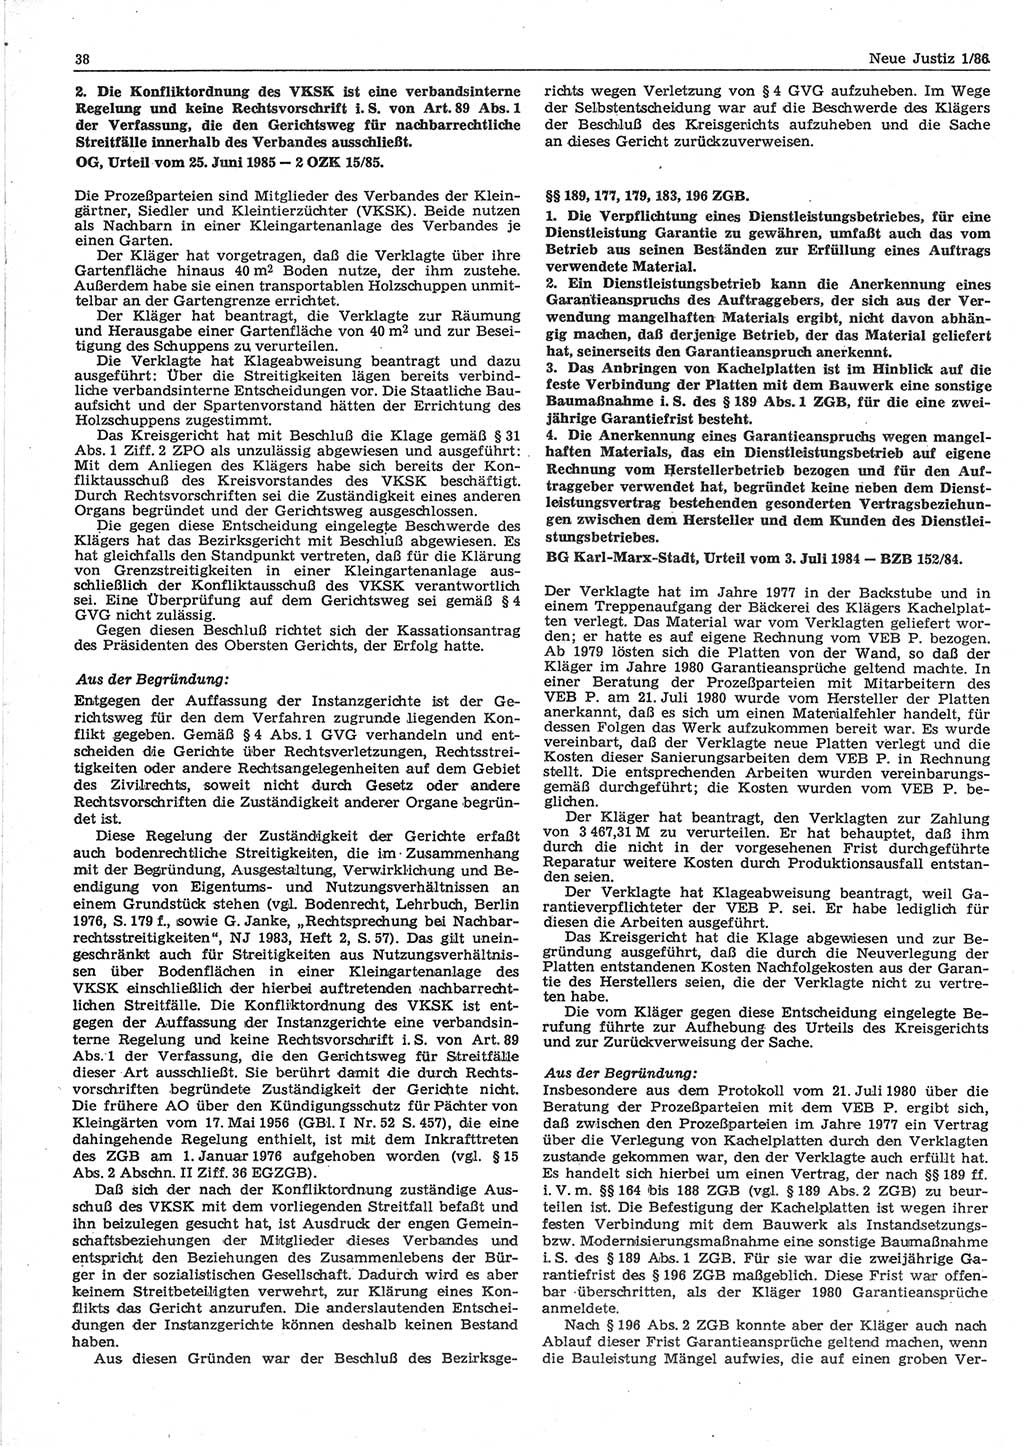 Neue Justiz (NJ), Zeitschrift für sozialistisches Recht und Gesetzlichkeit [Deutsche Demokratische Republik (DDR)], 40. Jahrgang 1986, Seite 38 (NJ DDR 1986, S. 38)